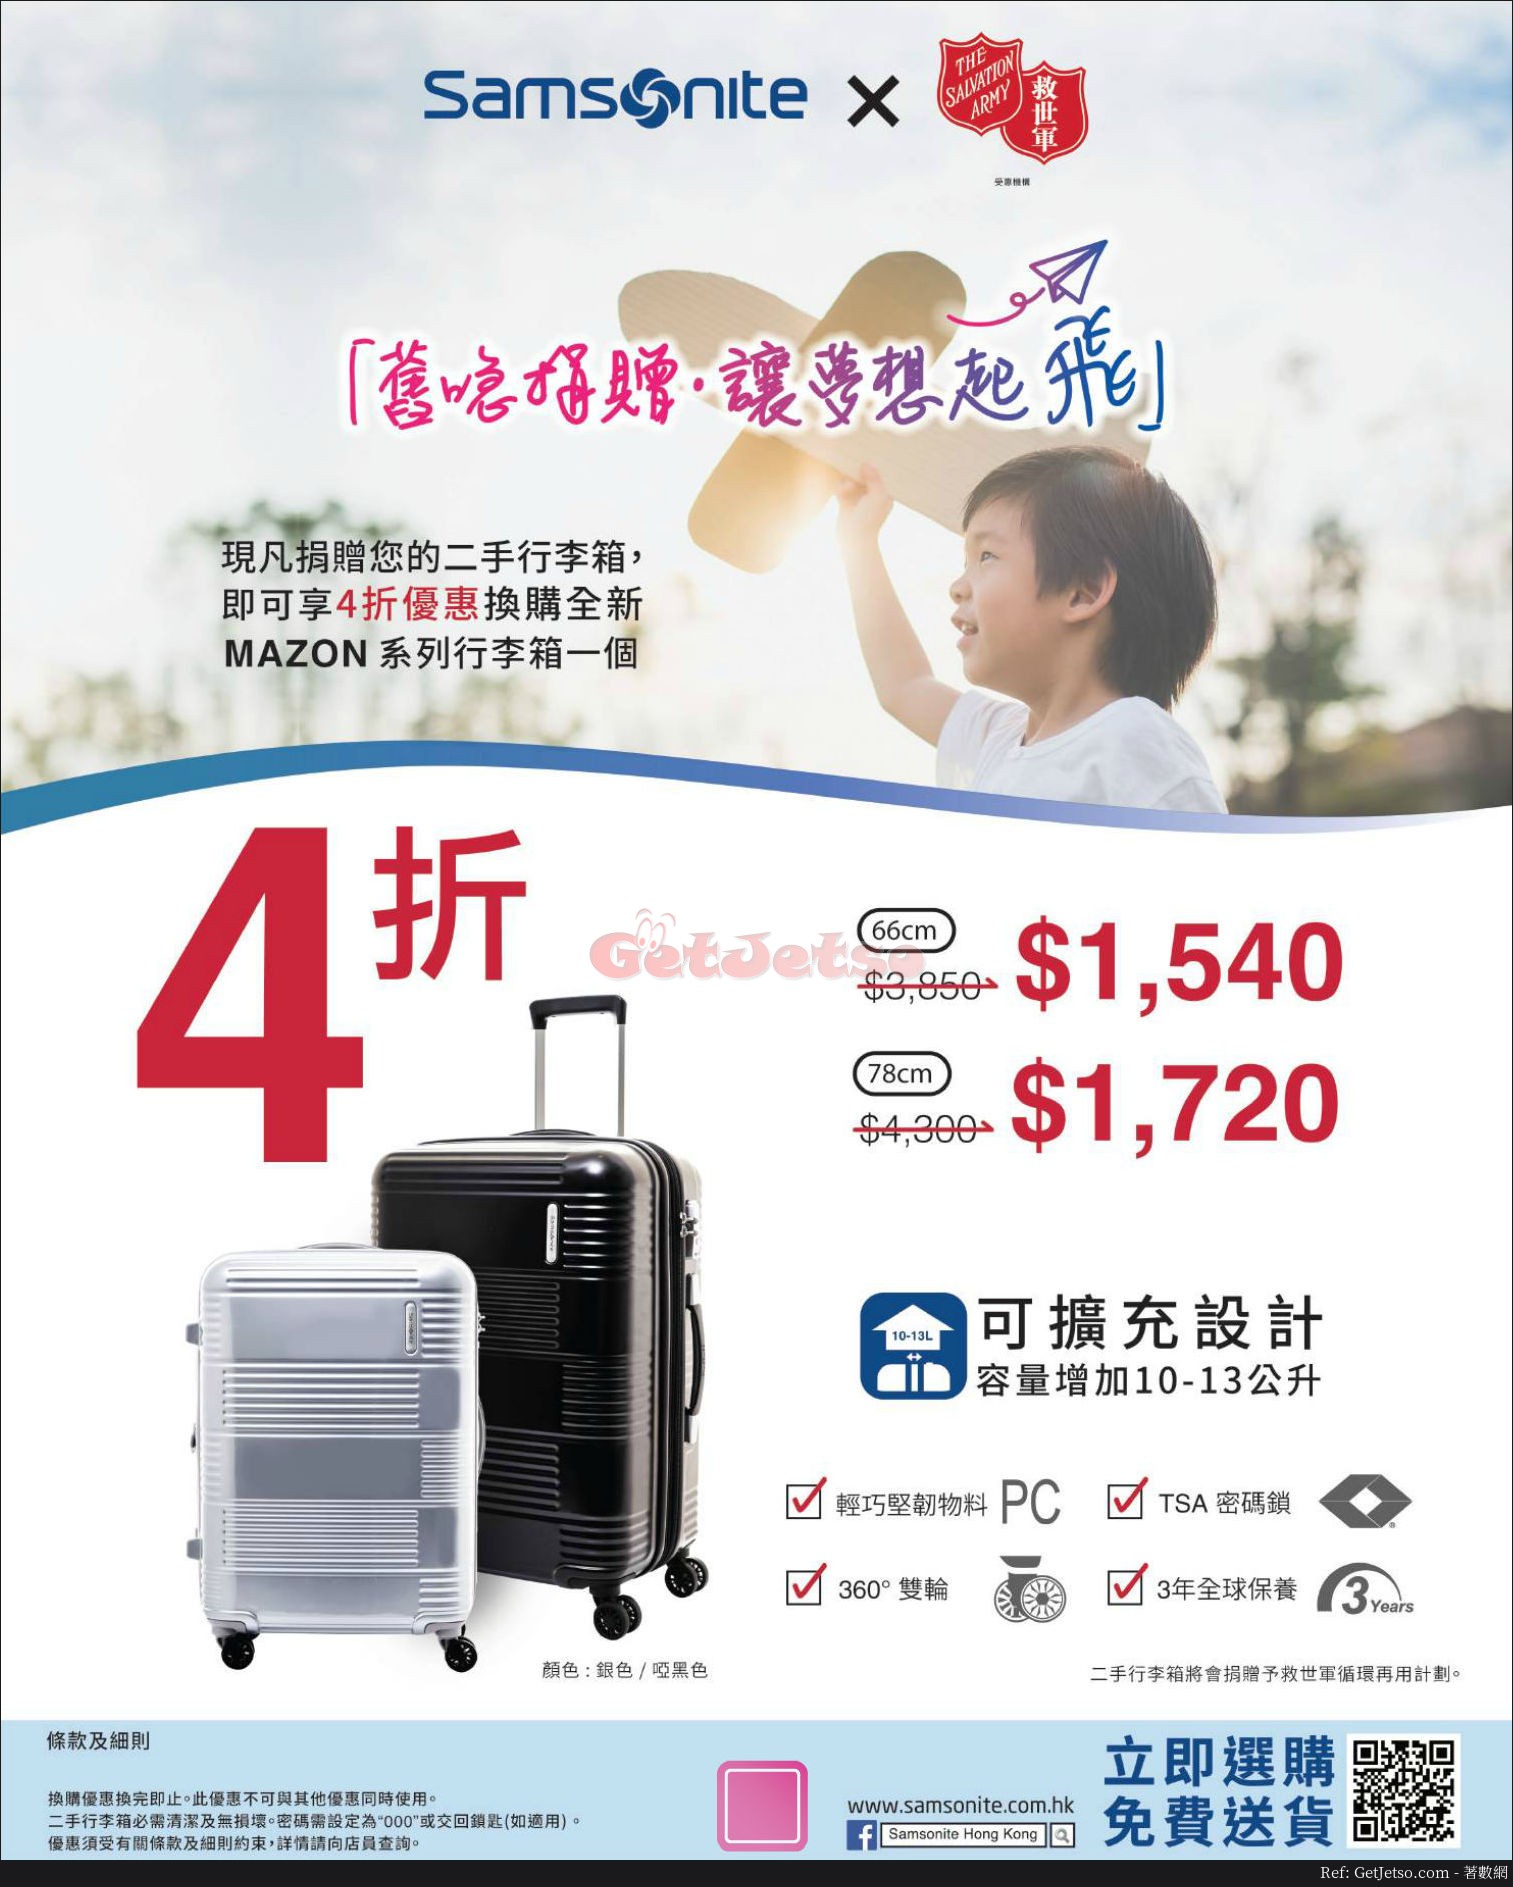 捐出二手行李箱享4折購買全新Mazon系列旅行箱優惠@Samsonite(18年5月2日起)圖片1